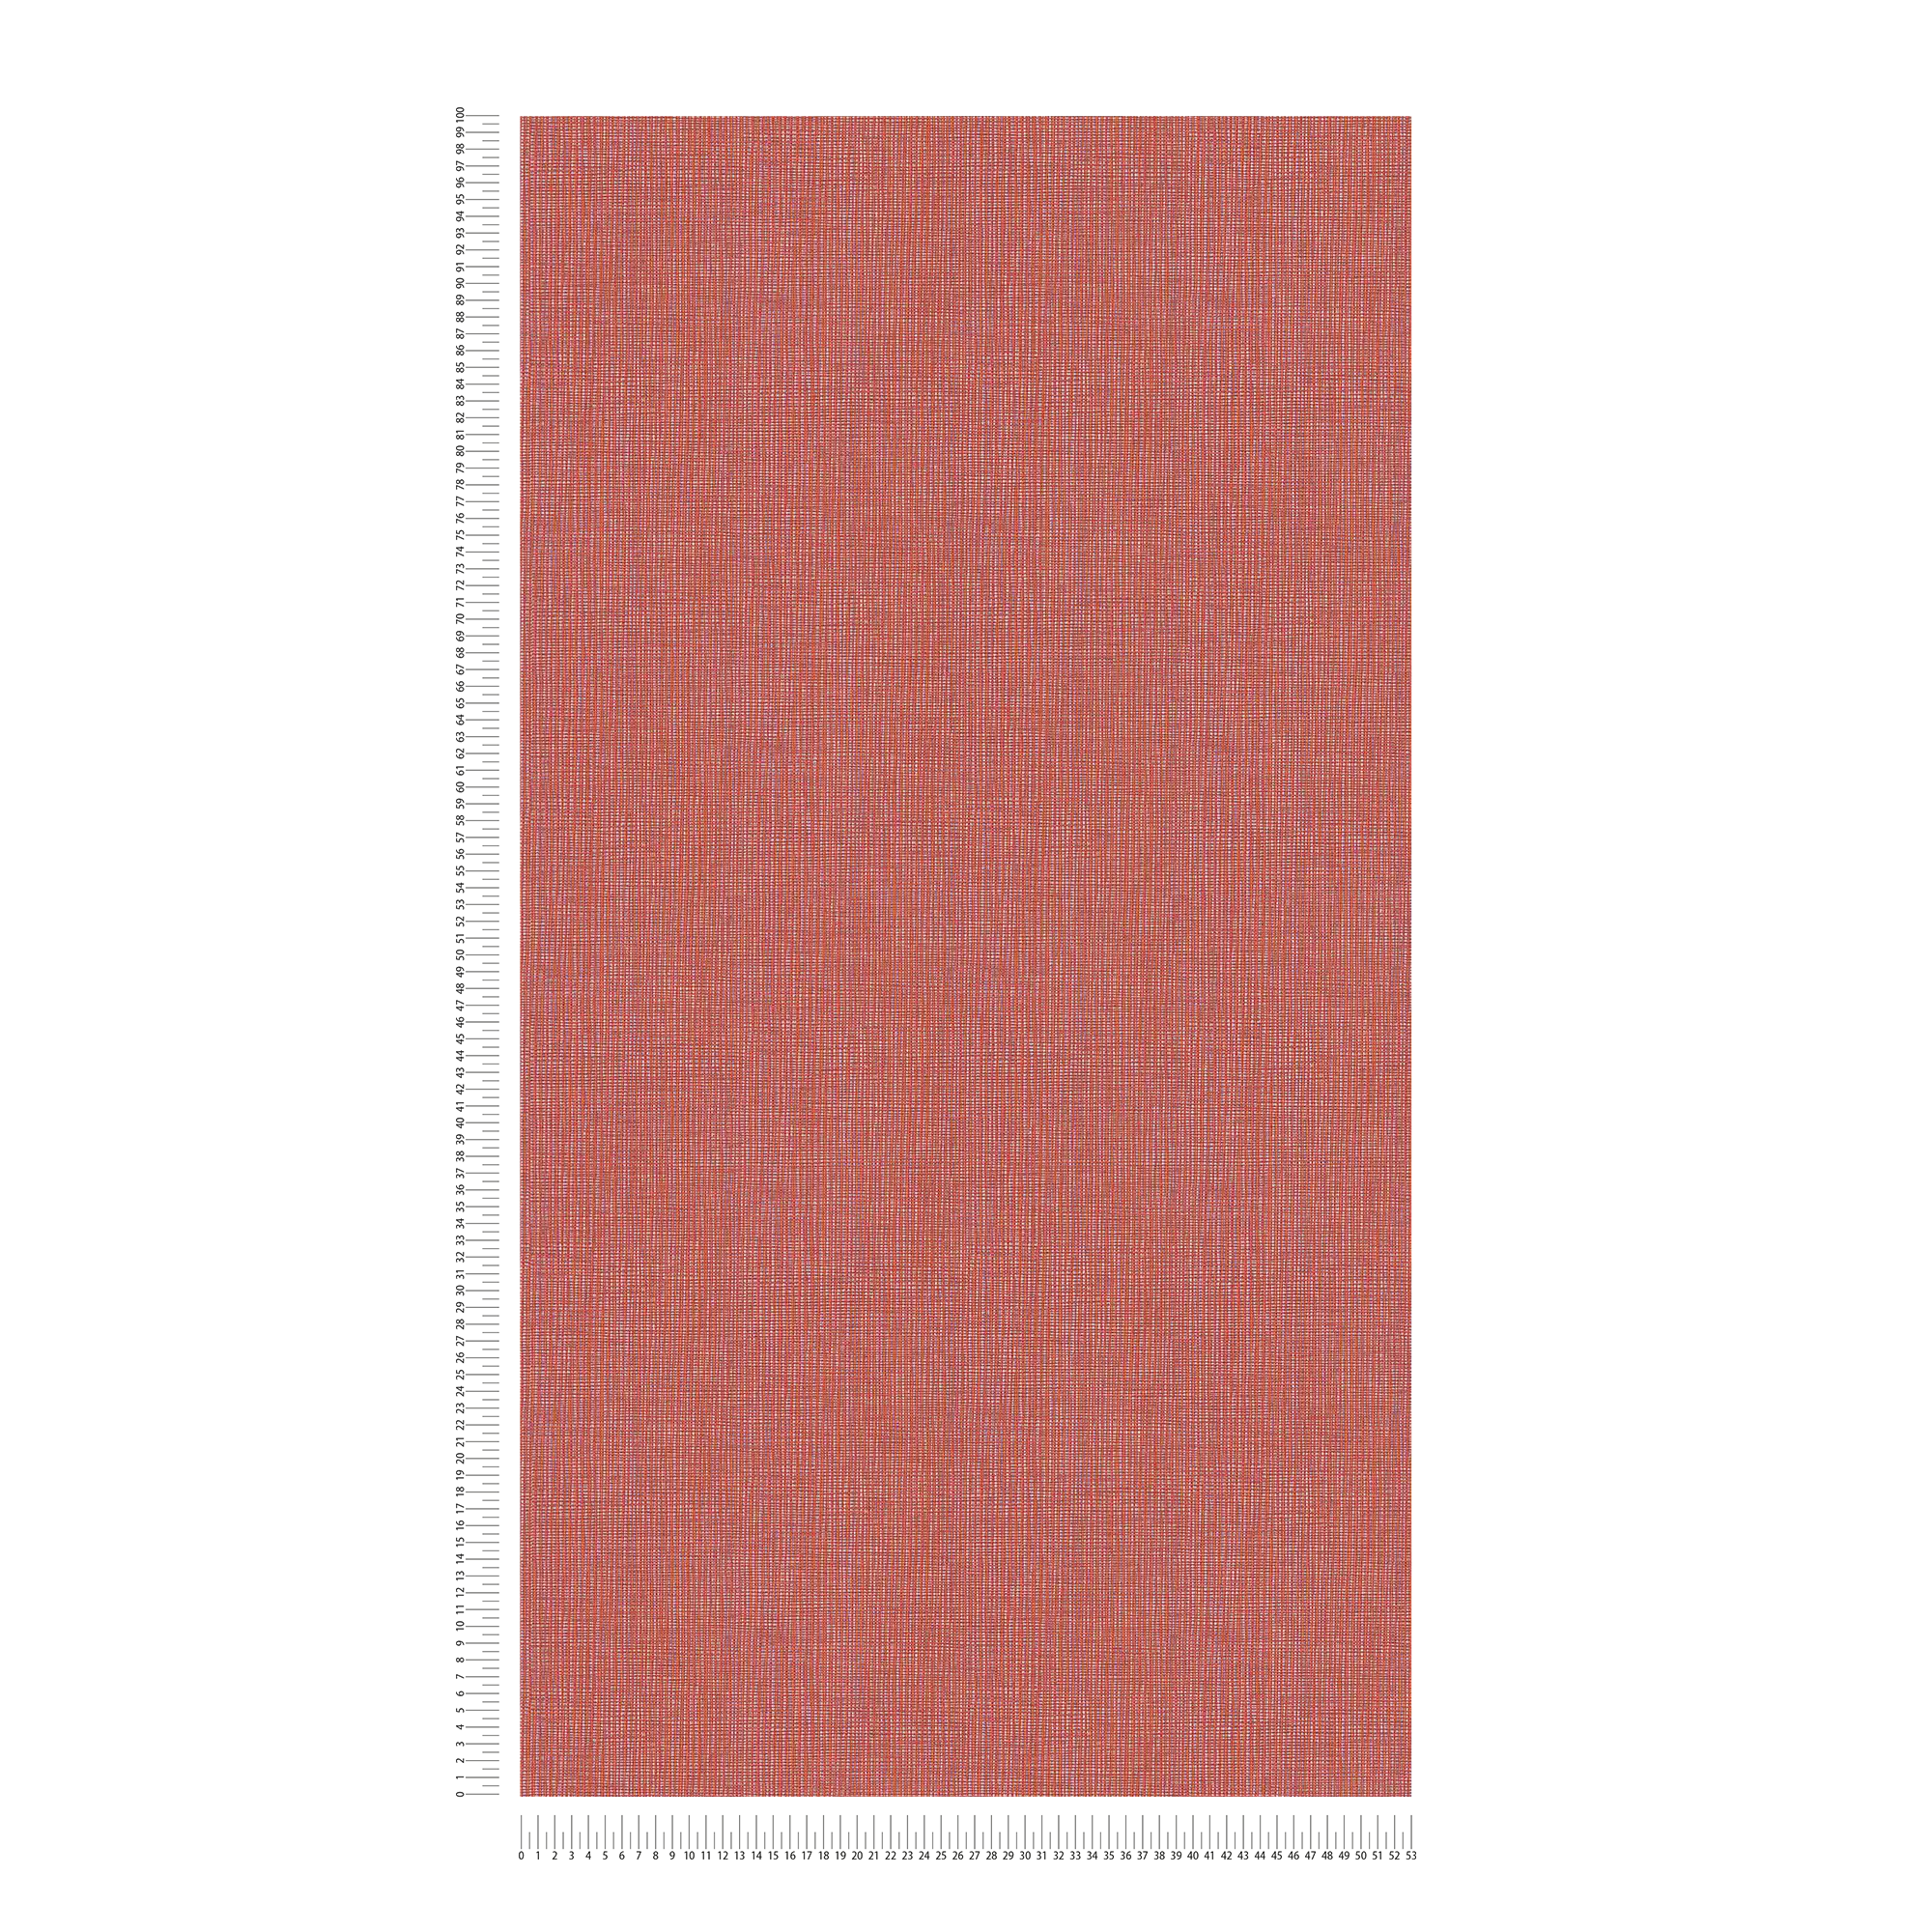             Papier peint rouge avec motif textile en rouge orange & violet
        